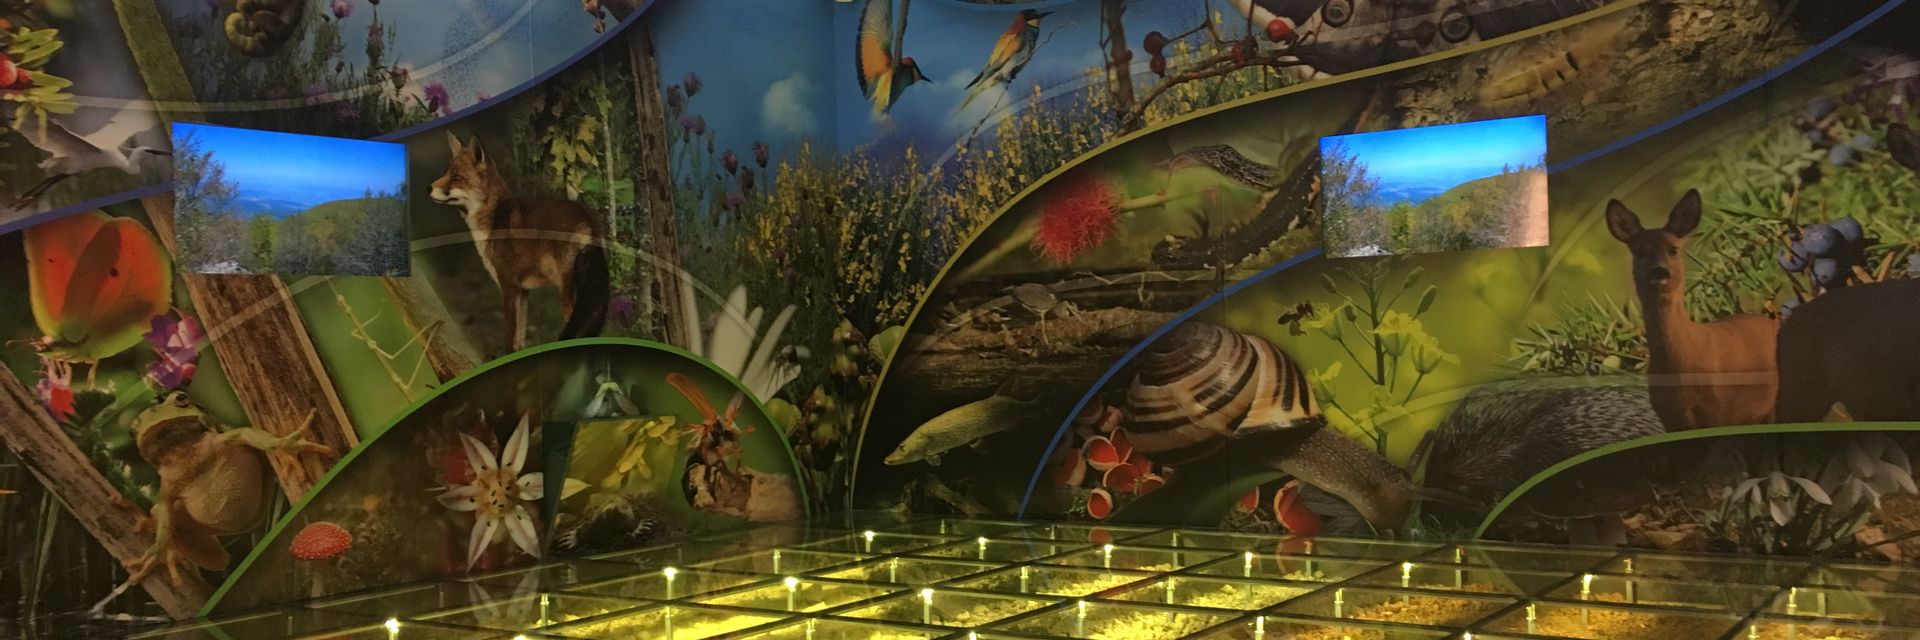 Musée de la Biodiversité